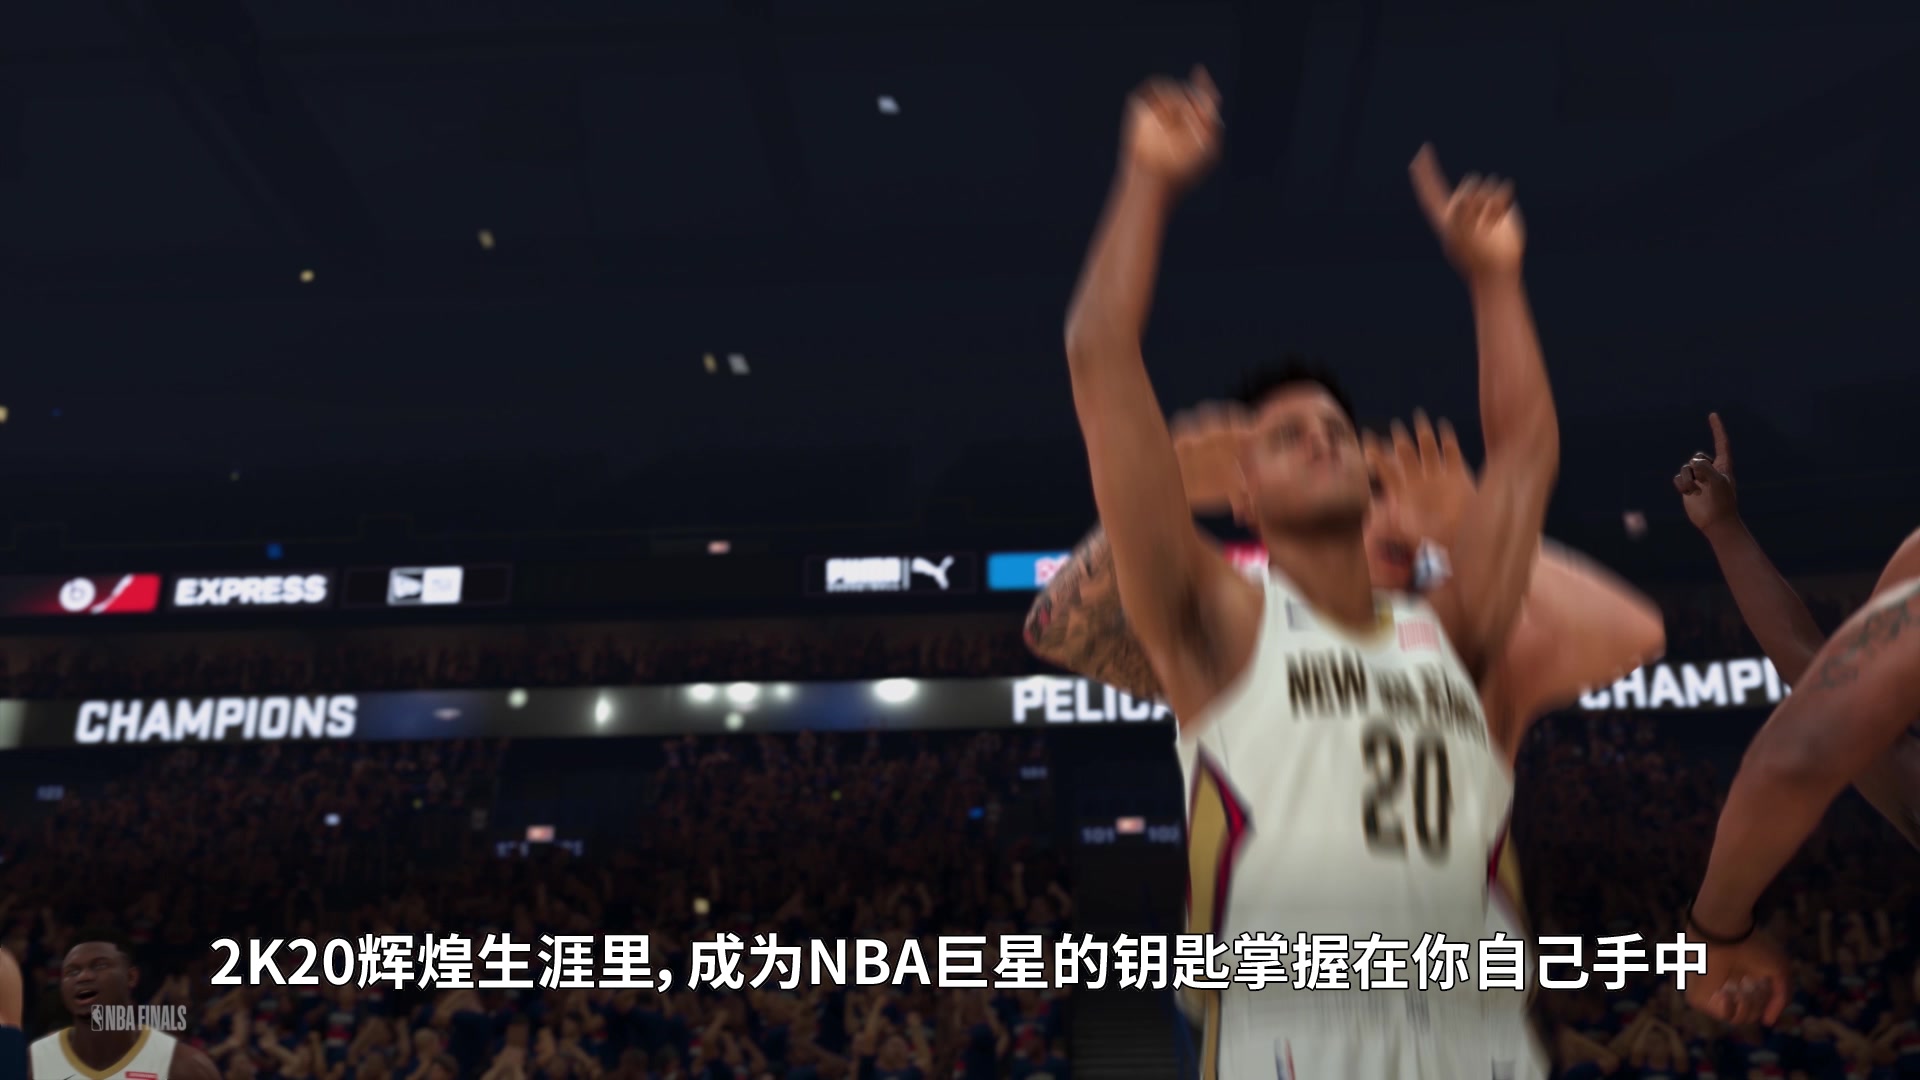 全新輝煌模式預告展示 《NBA 2K20》Demo試玩推出